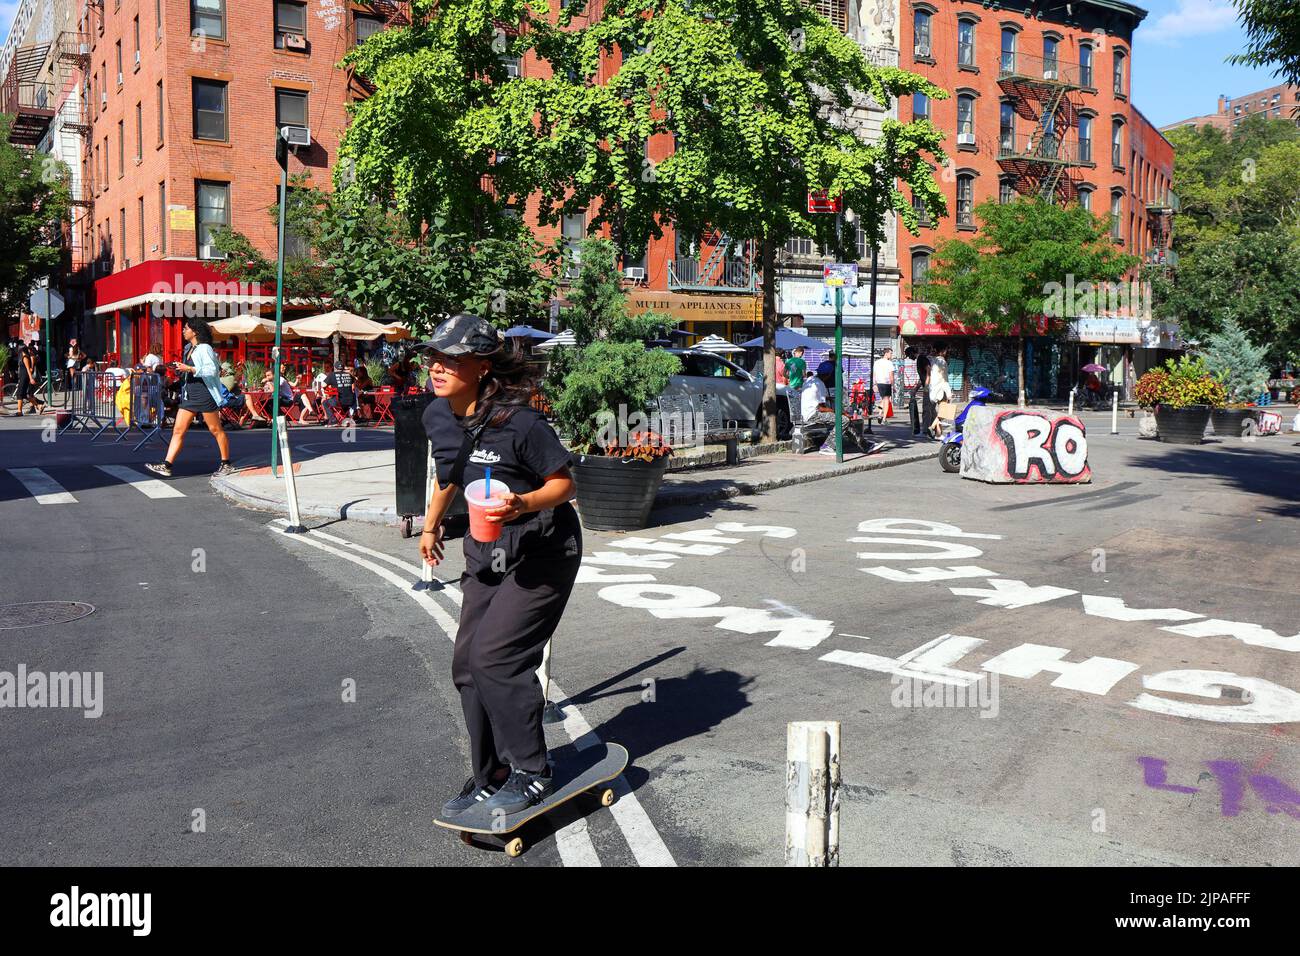 Una skateboarder mujer con un tallado de sandía del tamaño de un cuarto pasa por una new York greenstreet en 'Dimes Square' Chinatown/Lower East Side de Manhattan Foto de stock